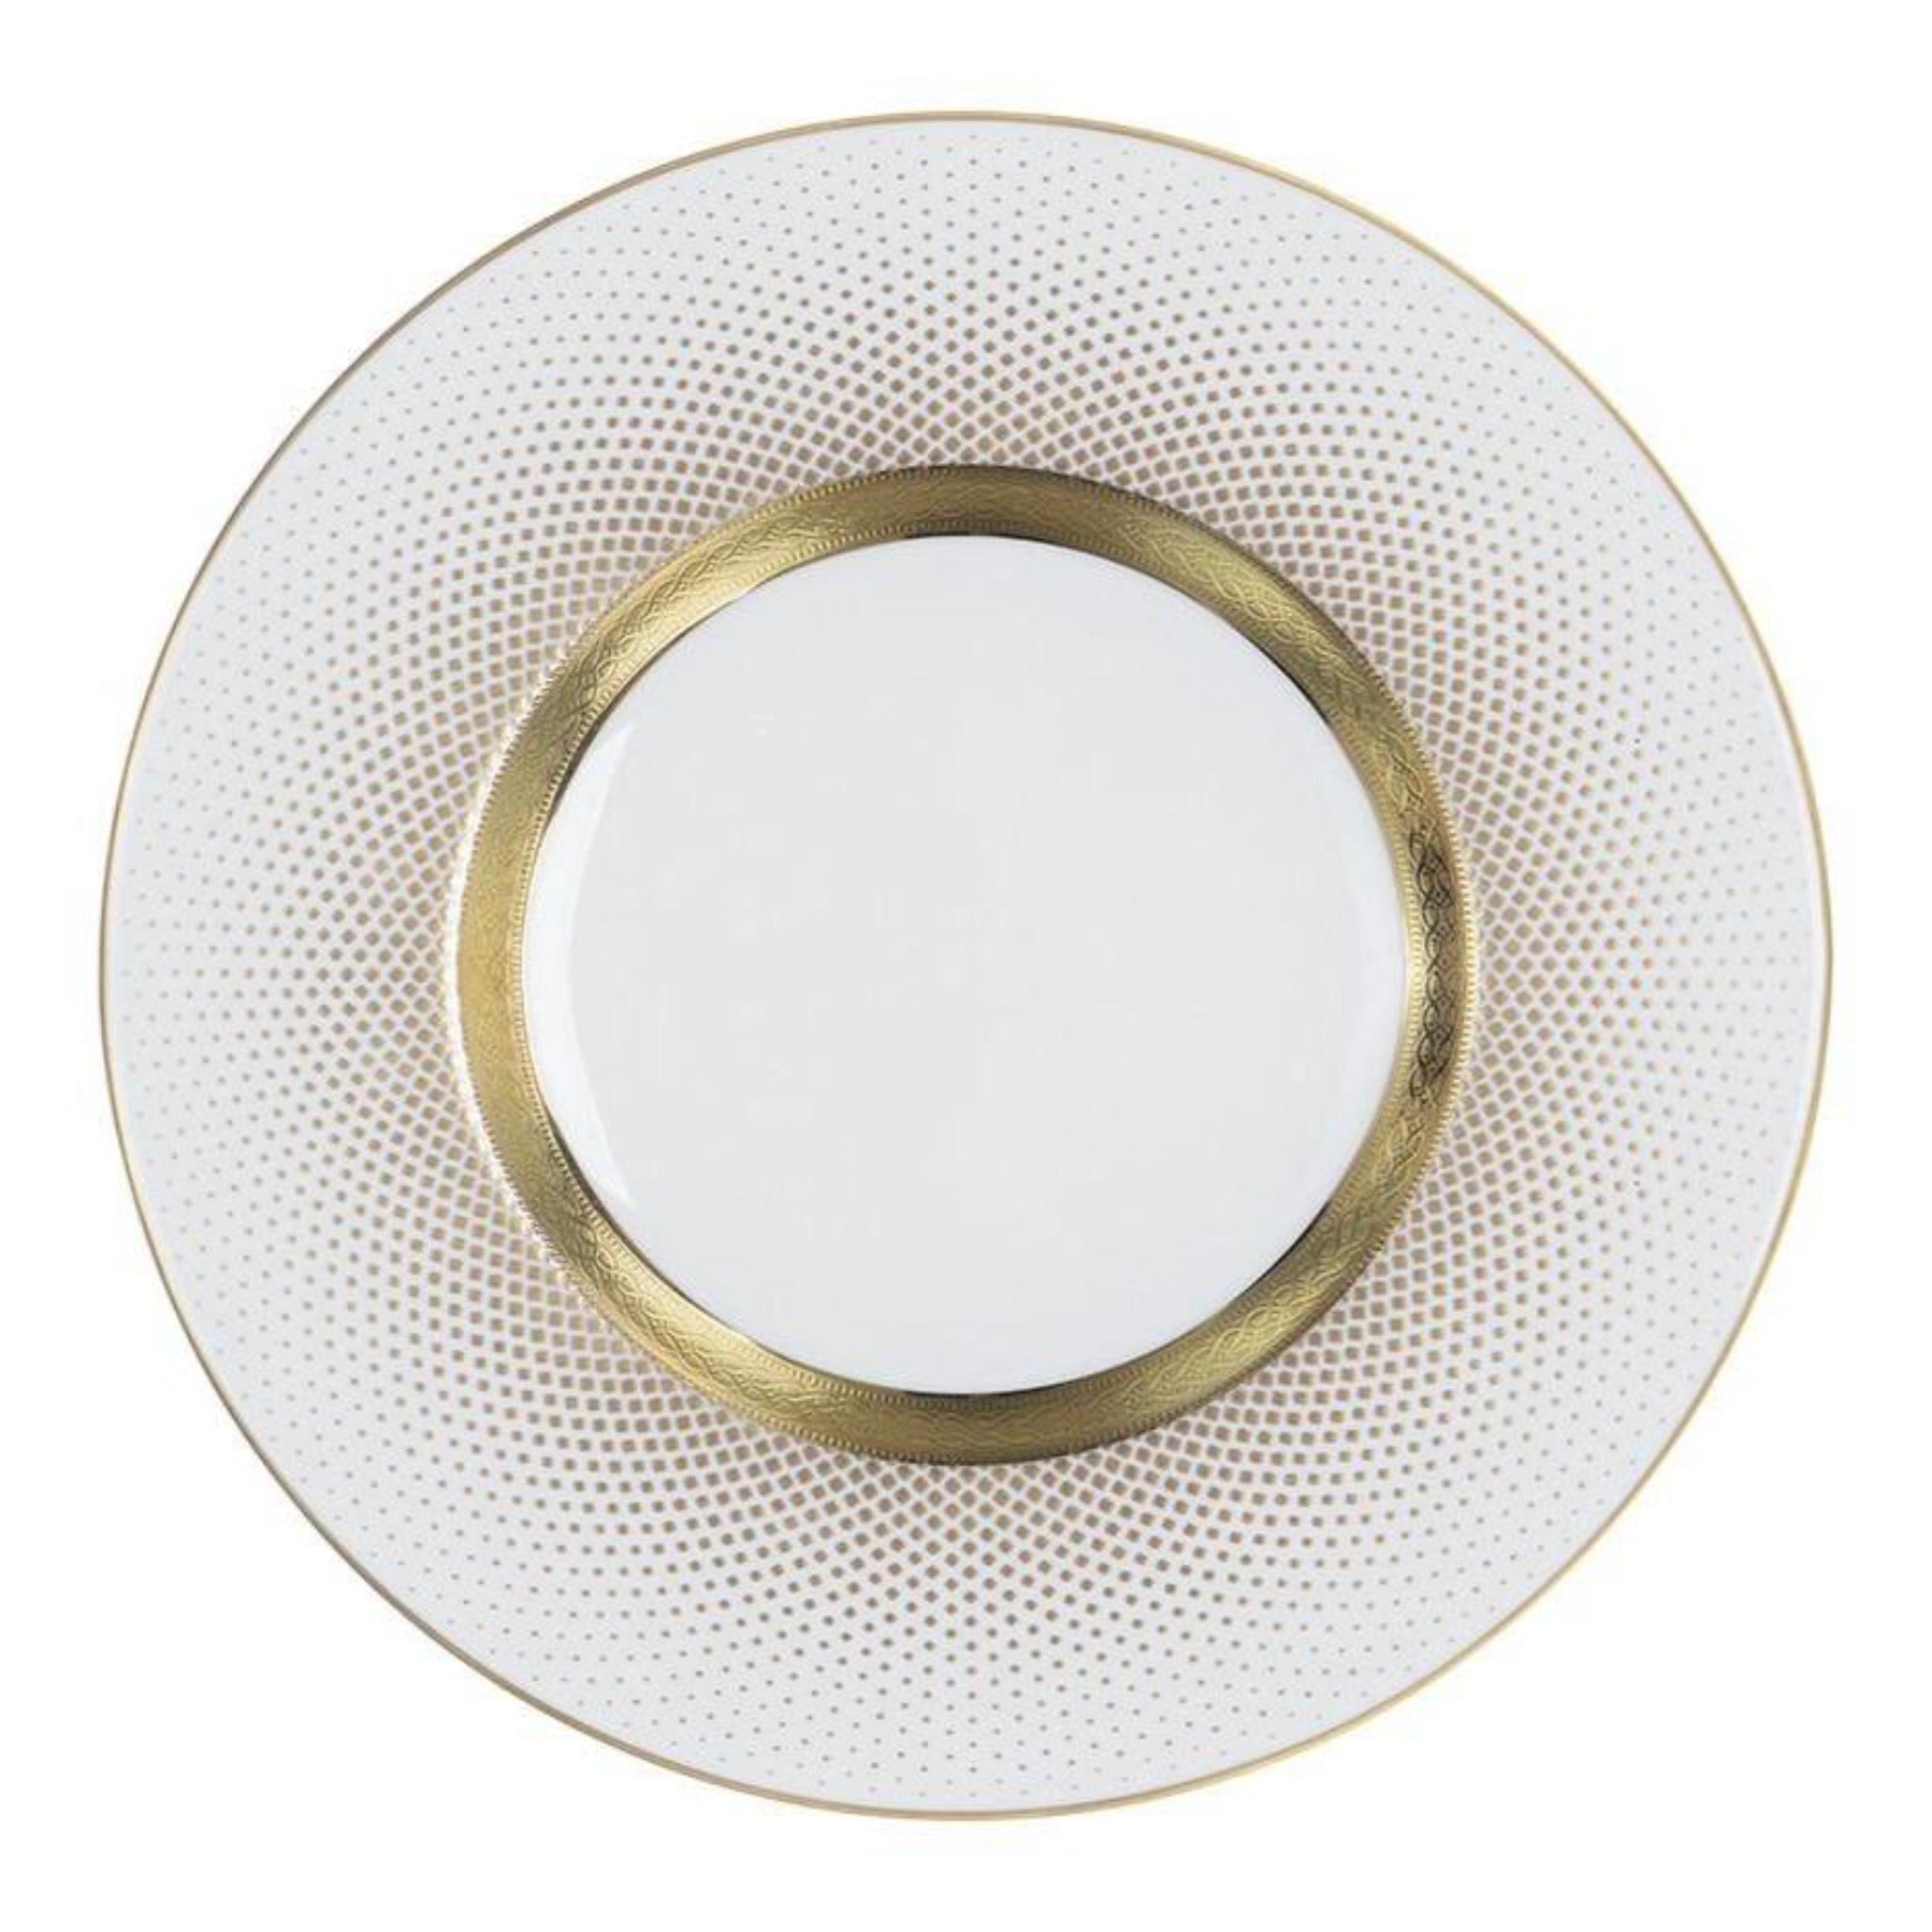 Falkenporzellan Dinner Set 112pcs - Porcelain - White & Gold - 1300012